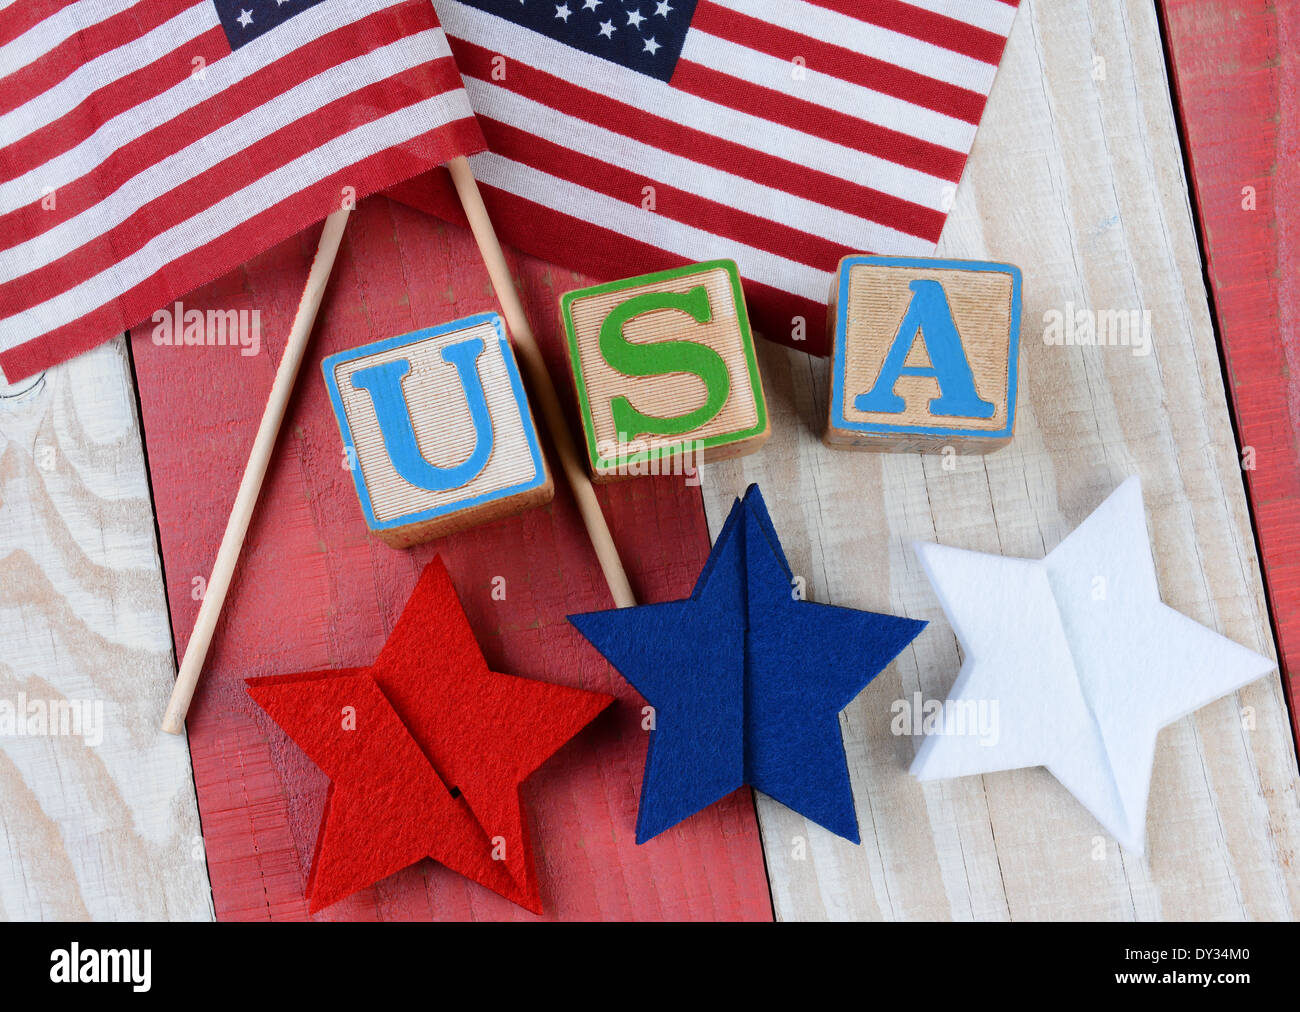 Una pantalla patriótica de banderas americanas, rojo, blanco y azul de estrellas y USA expuestas con bloques de letras Foto de stock